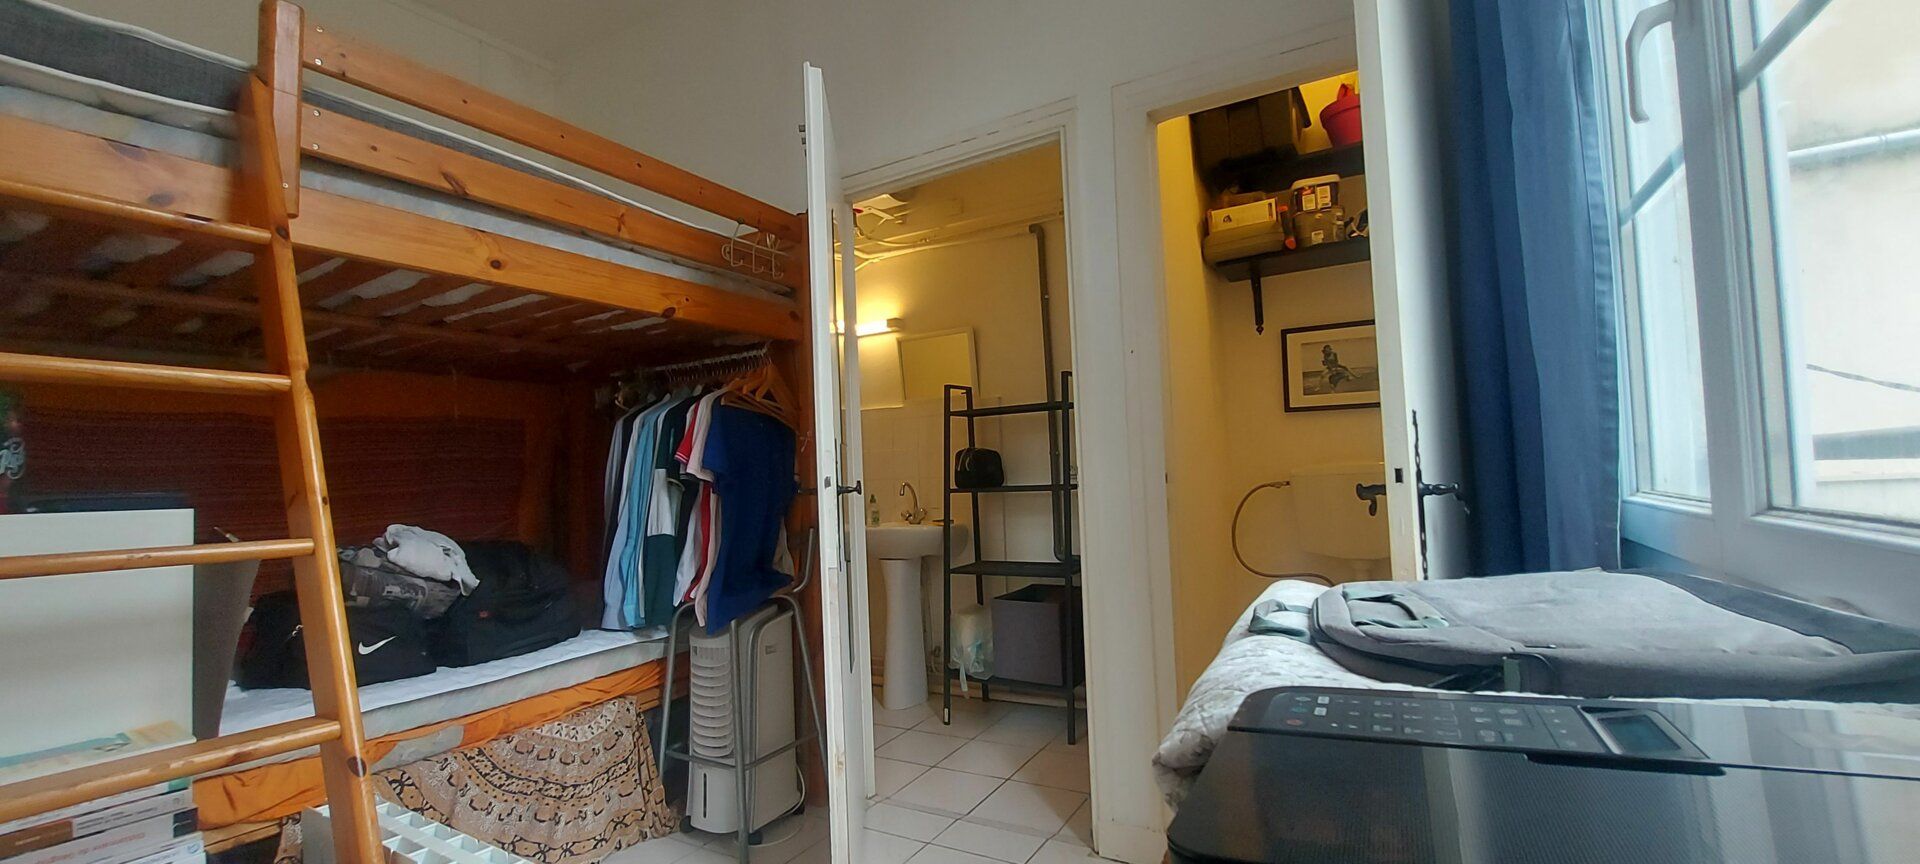 Appartement à vendre 1 30.14m2 à La Rochelle vignette-3